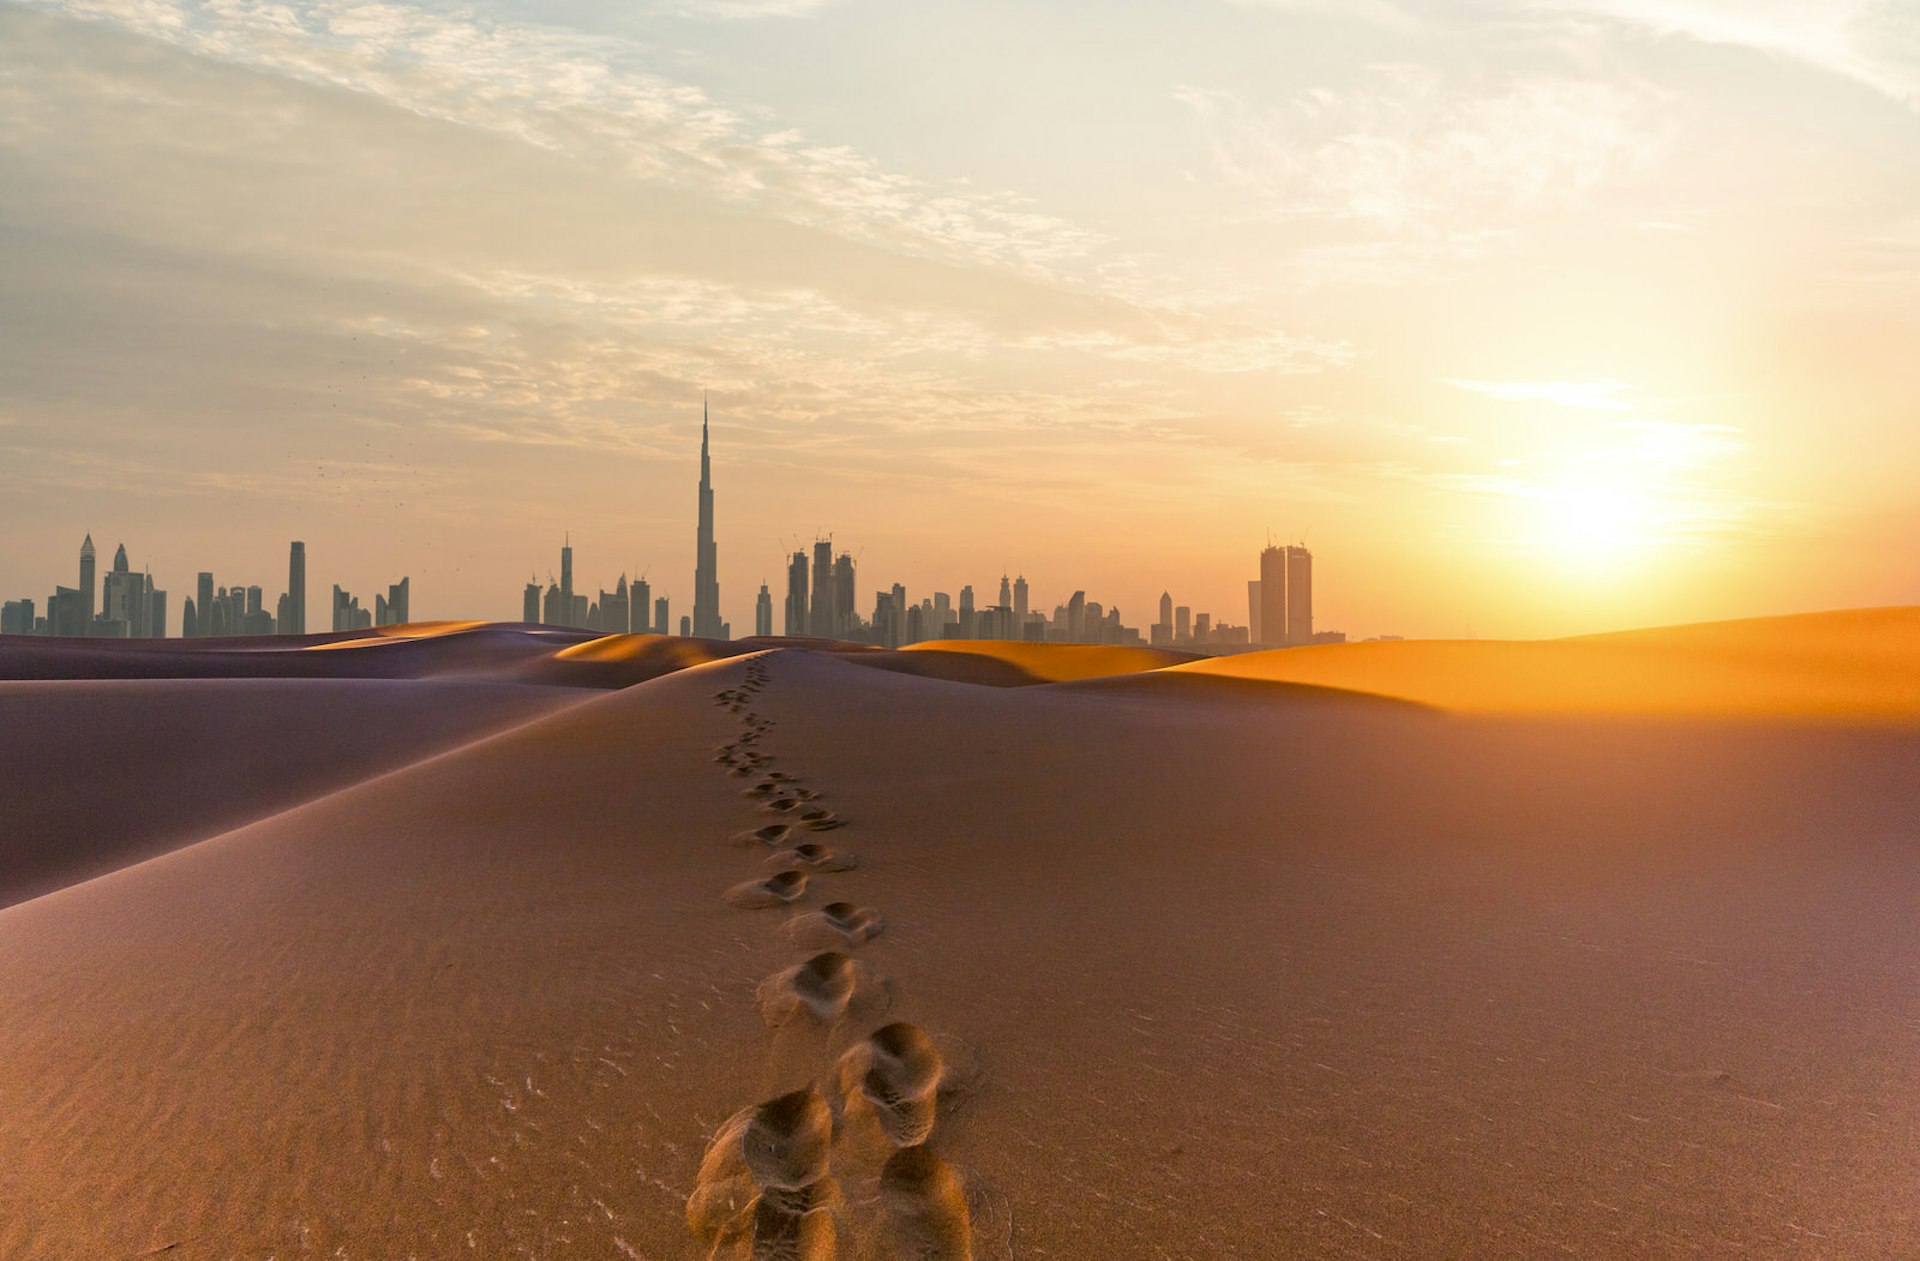 Sunrise over the desert and skyline of Dubai © aiqingwang / Getty Images